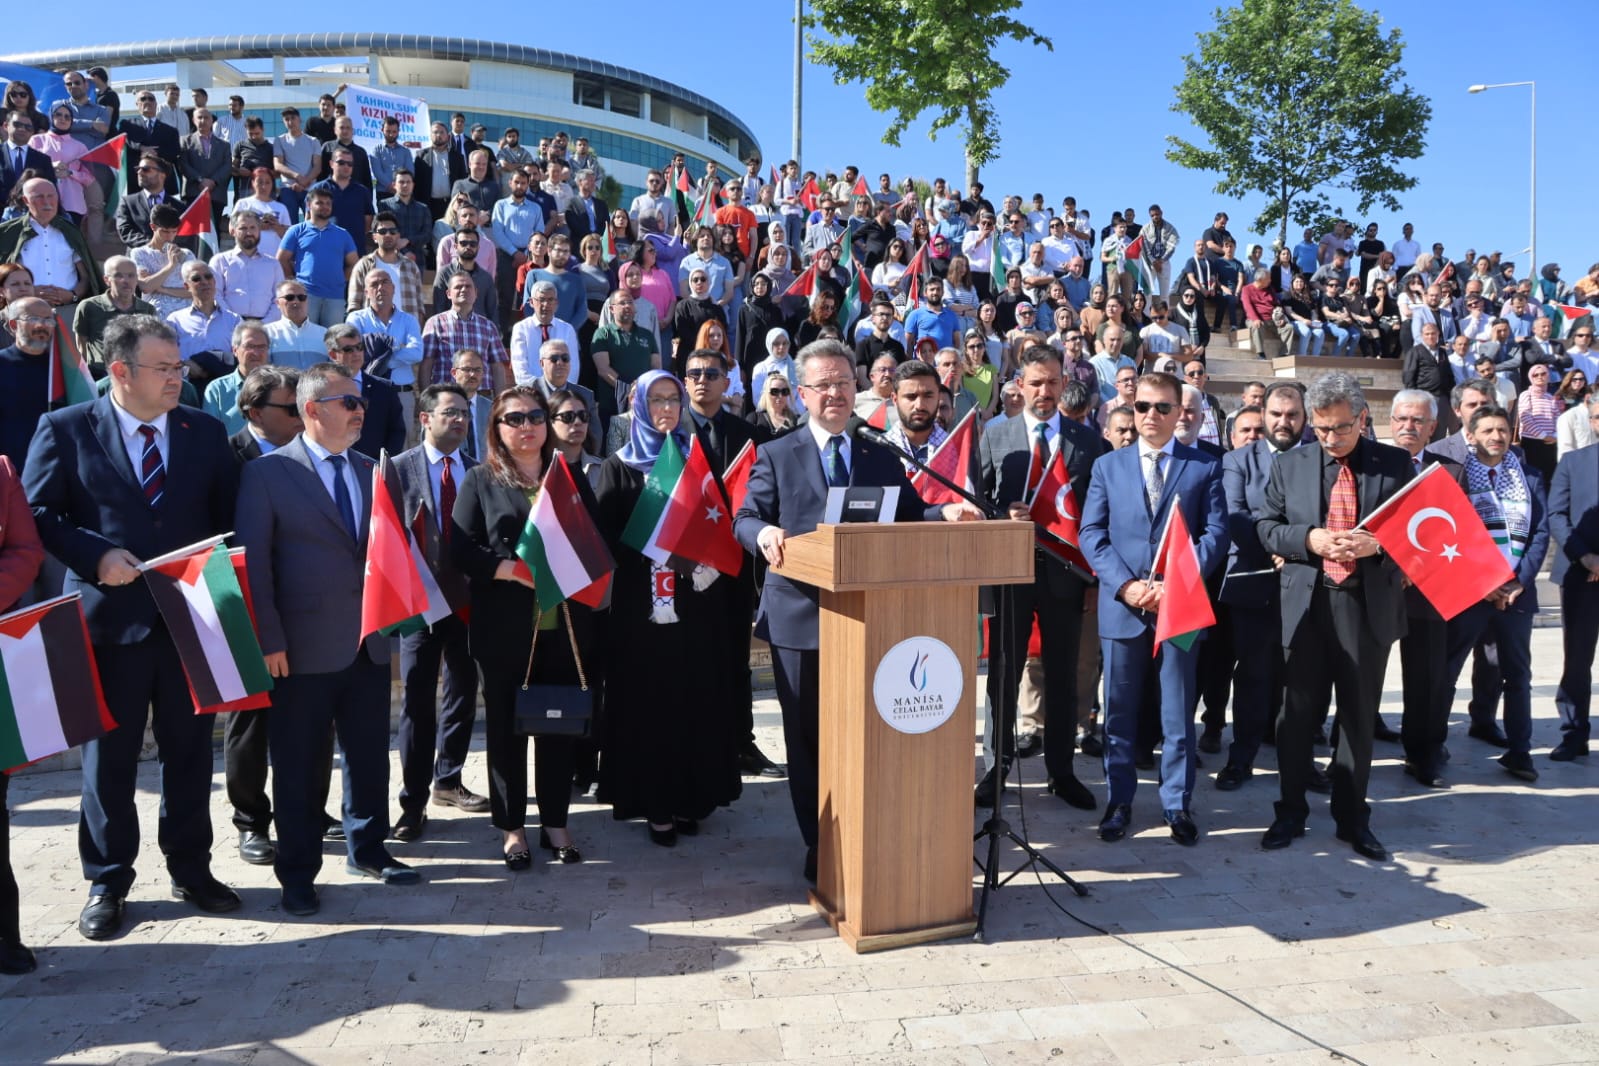 Manisa Celal Bayar Üniversitesi (Cbü), Abd Üniversitelerinde Ifade Özgürlüğüne Yönelik Baskıya Karşı Duruşu Ve Filistin Halkının Yanında Olduğunu Açıkladı (2)